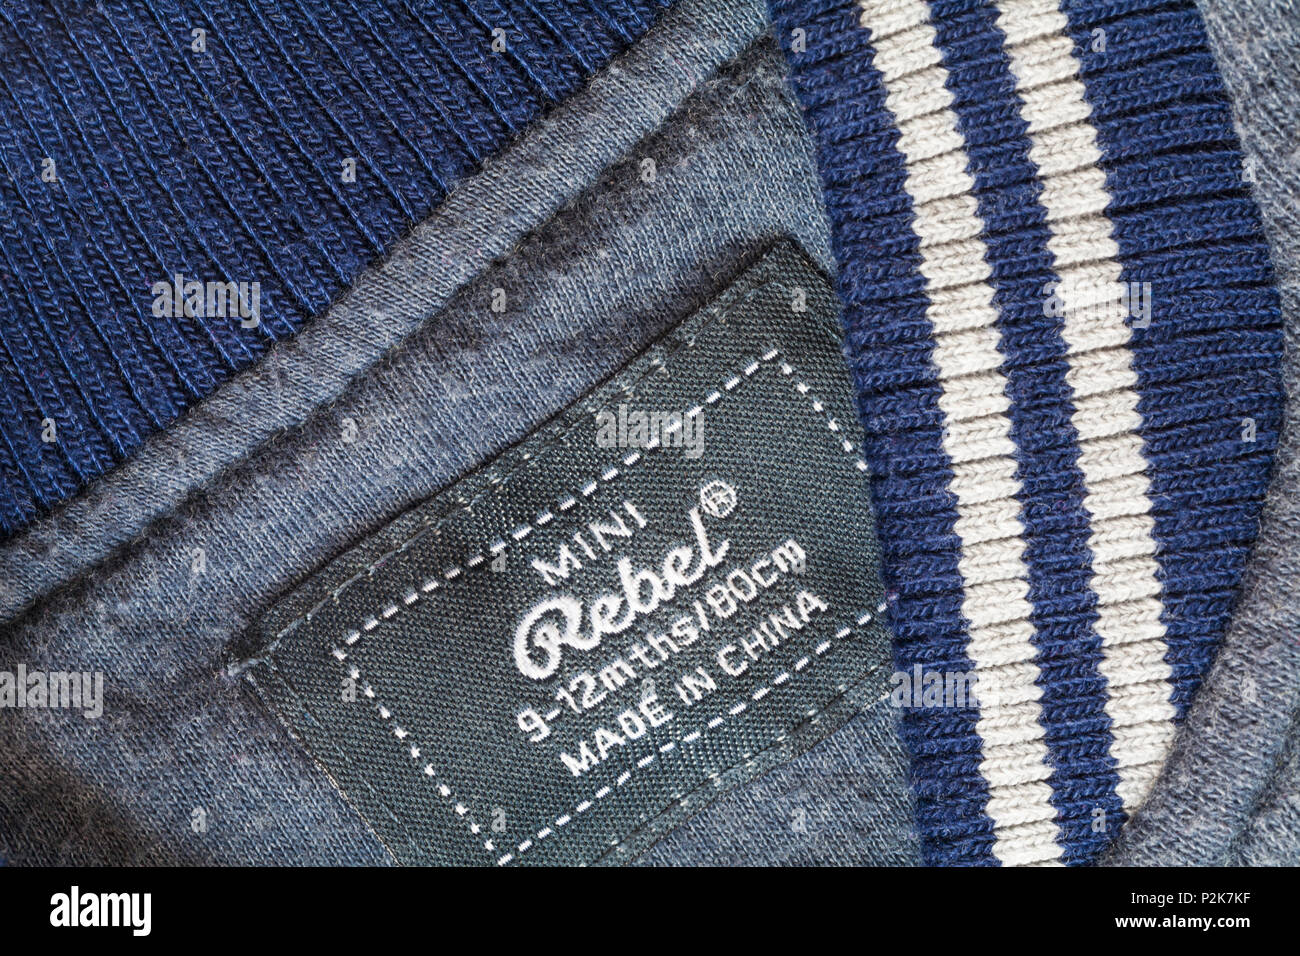 Label in mini Rebel Baby Jungen jacke Kleidung Made in China - im UK Vereinigtes Königreich, Großbritannien verkauft. Stockfoto